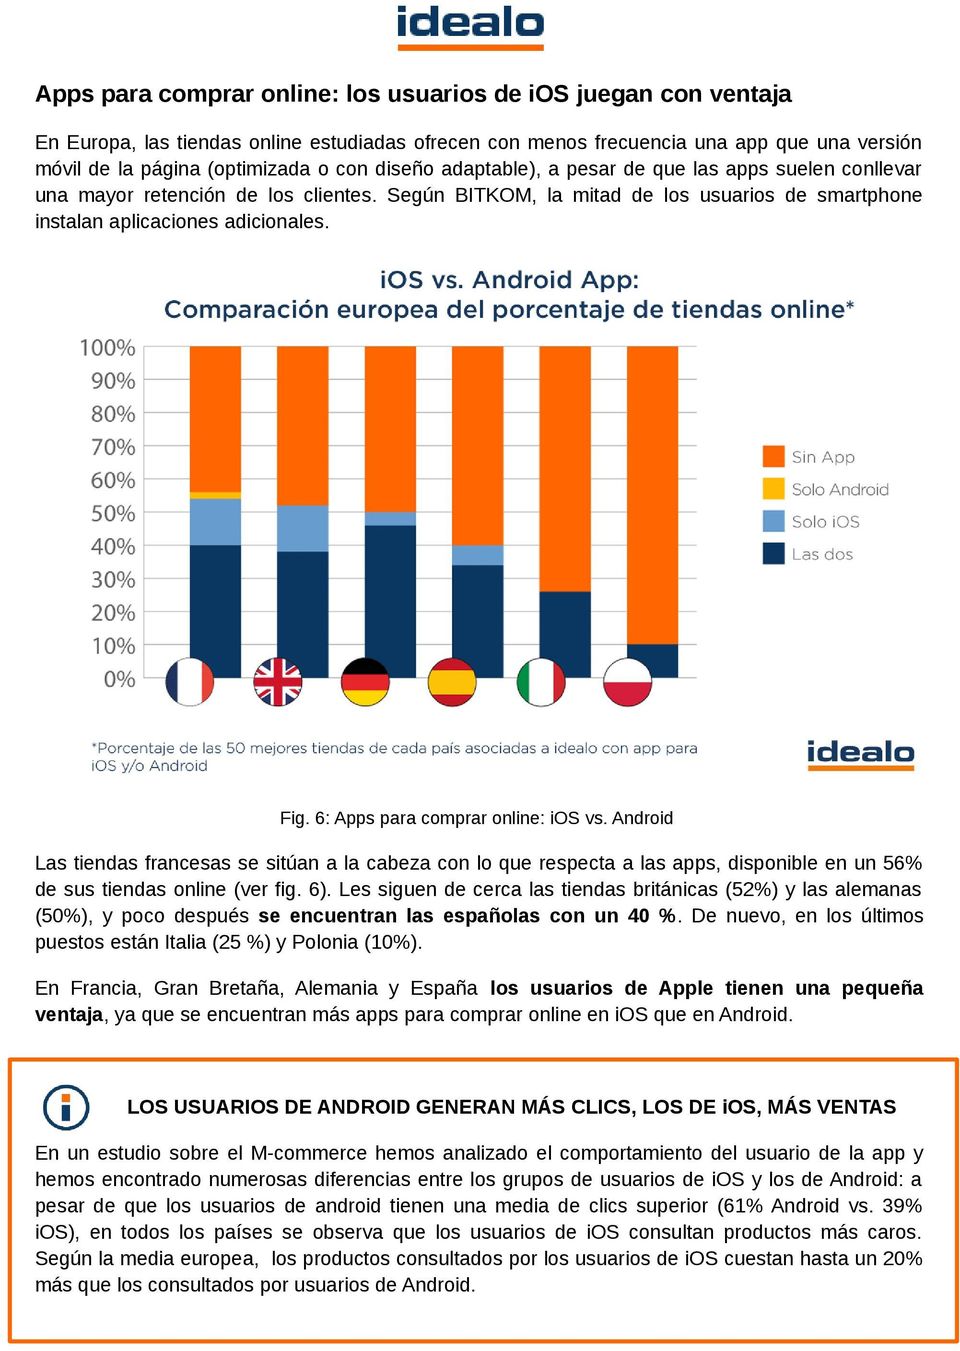 6: Apps para comprar onine: ios vs. Android Las tiendas francesas se sitúan a a cabeza con o que respecta a as apps, disponibe en un 56% de sus tiendas onine (ver fig. 6).